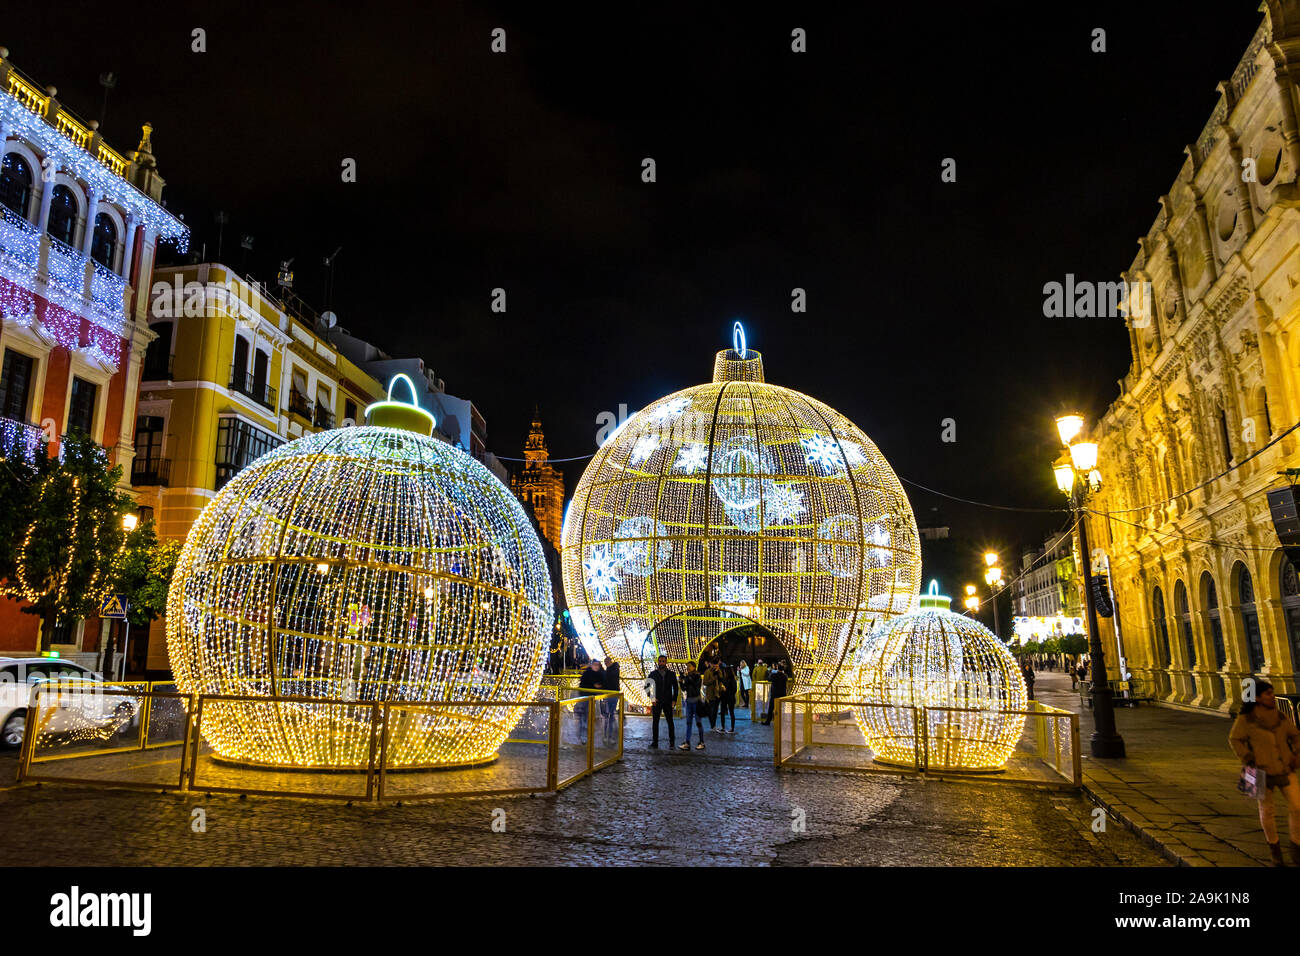 Siviglia, Spagna - 14 dicembre 2017: la gente cammina vicino al illuminato decorazioni di Natale su San Francisco Square nel centro della città di Siviglia, Spagna Foto Stock